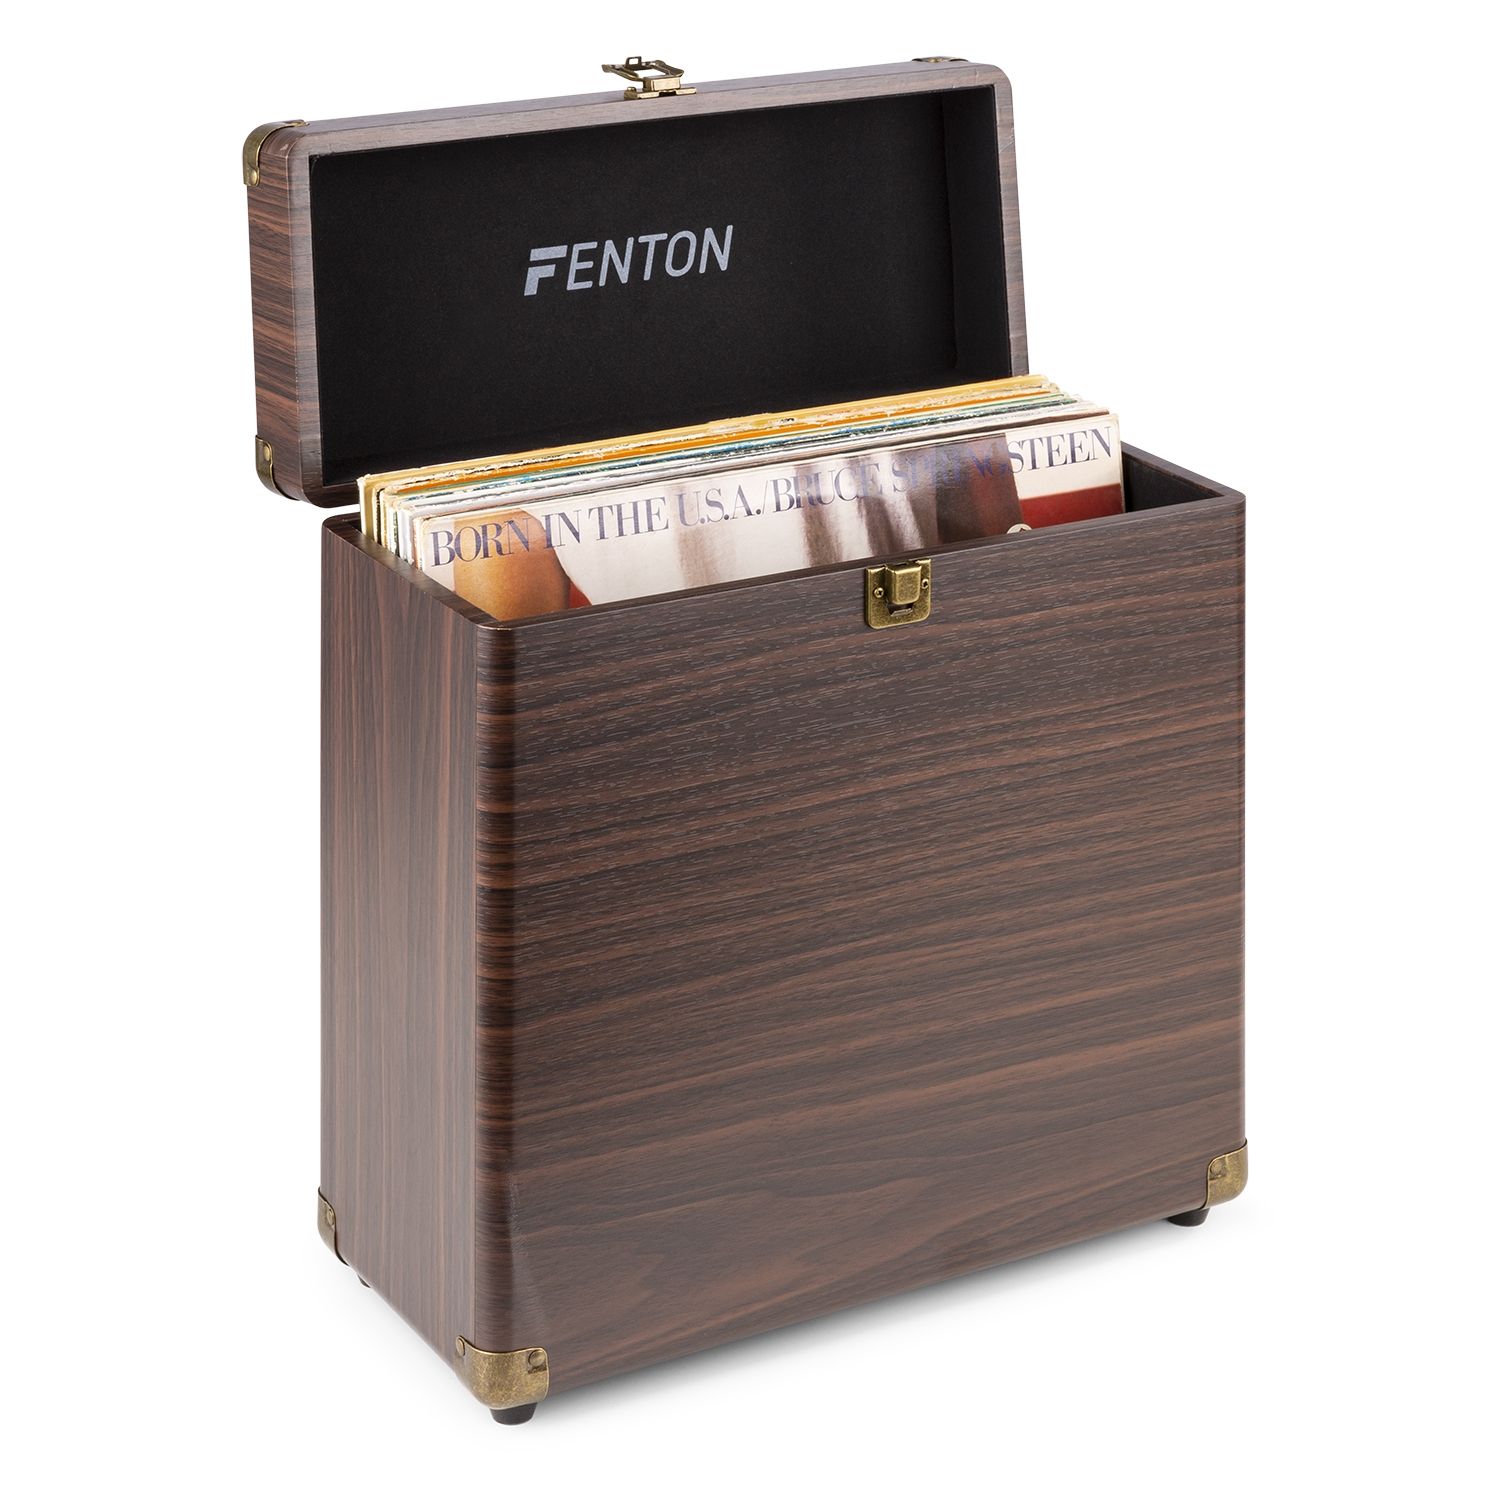 Fenton RC30 - Valise pour disques vinyles - Bois noyer